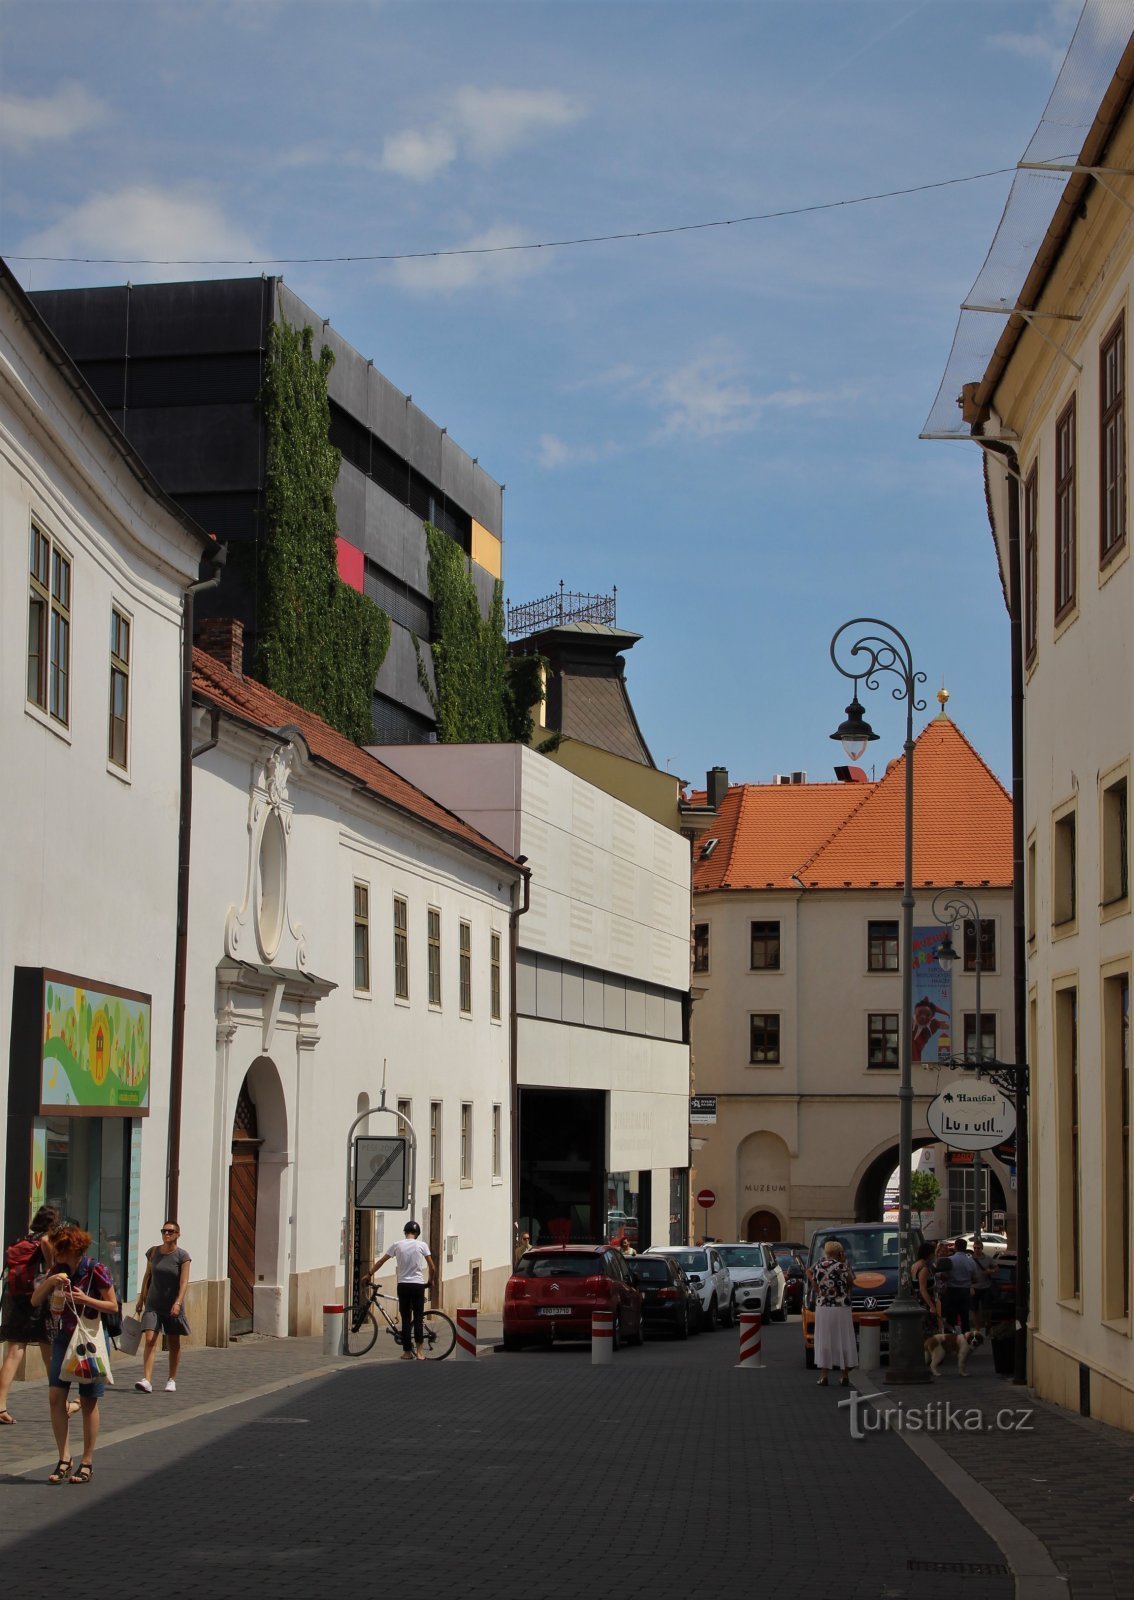 Nền đường phố Orlí với cổng Menínská